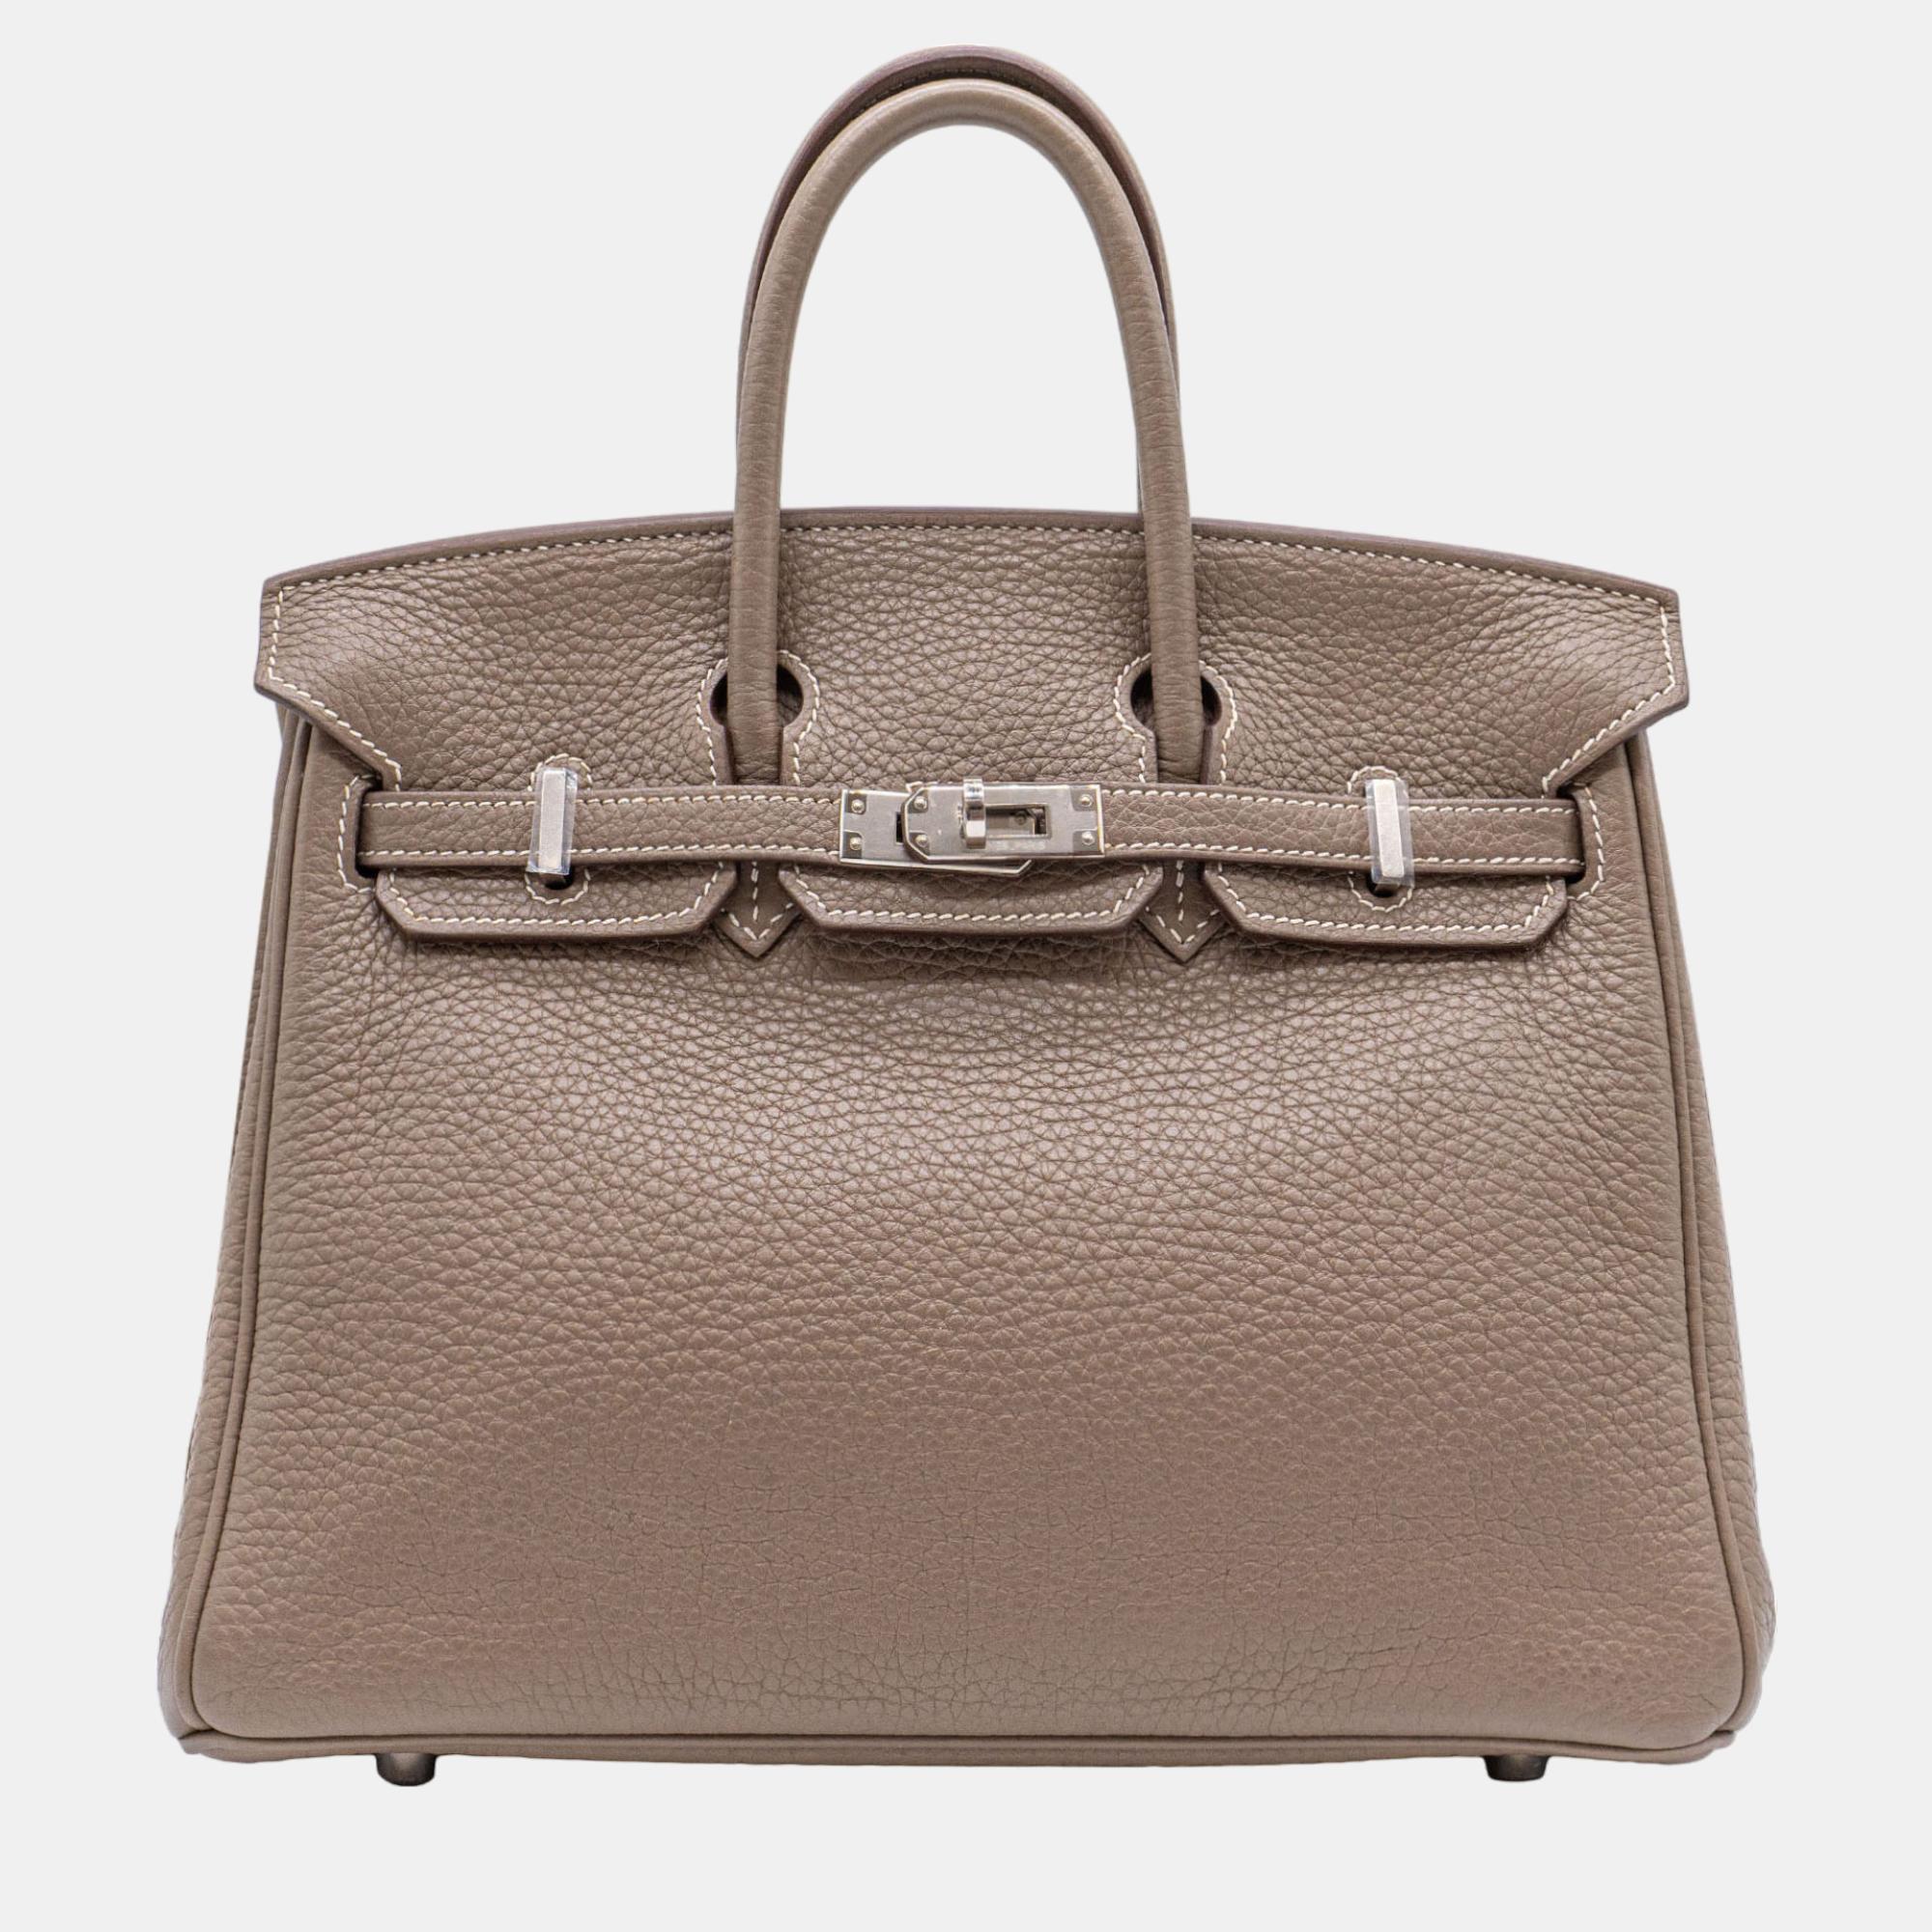 Hermès Birkin 25 Etoupe Togo With PHW Bag